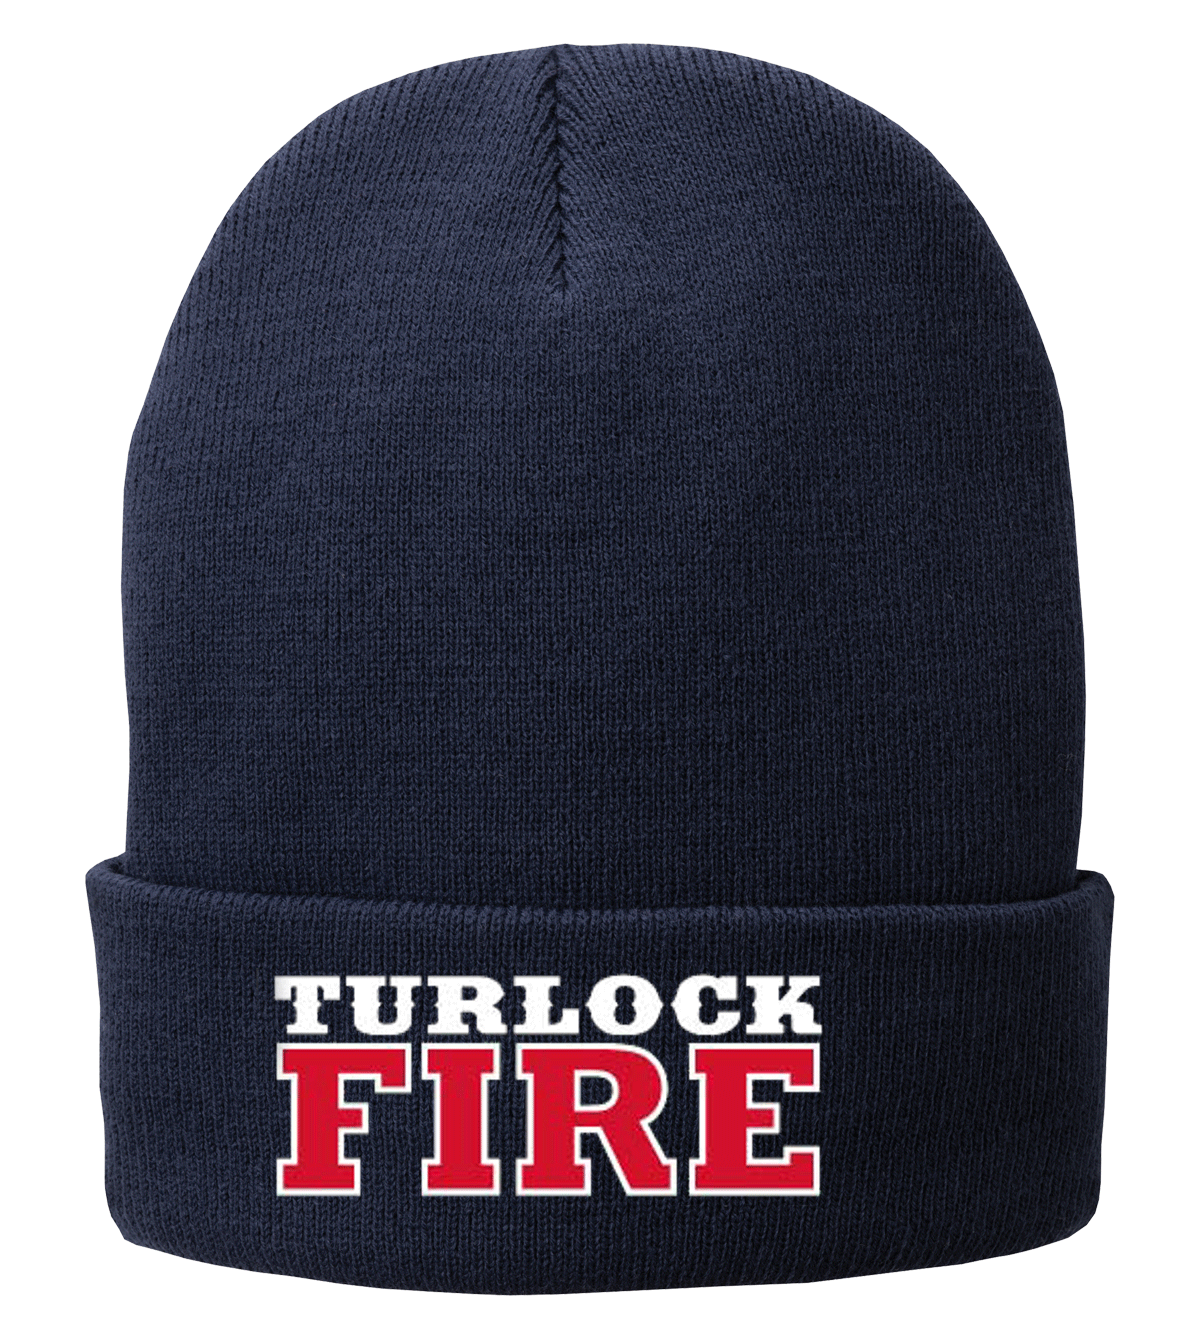 Turlock Fire Cuff Beanie